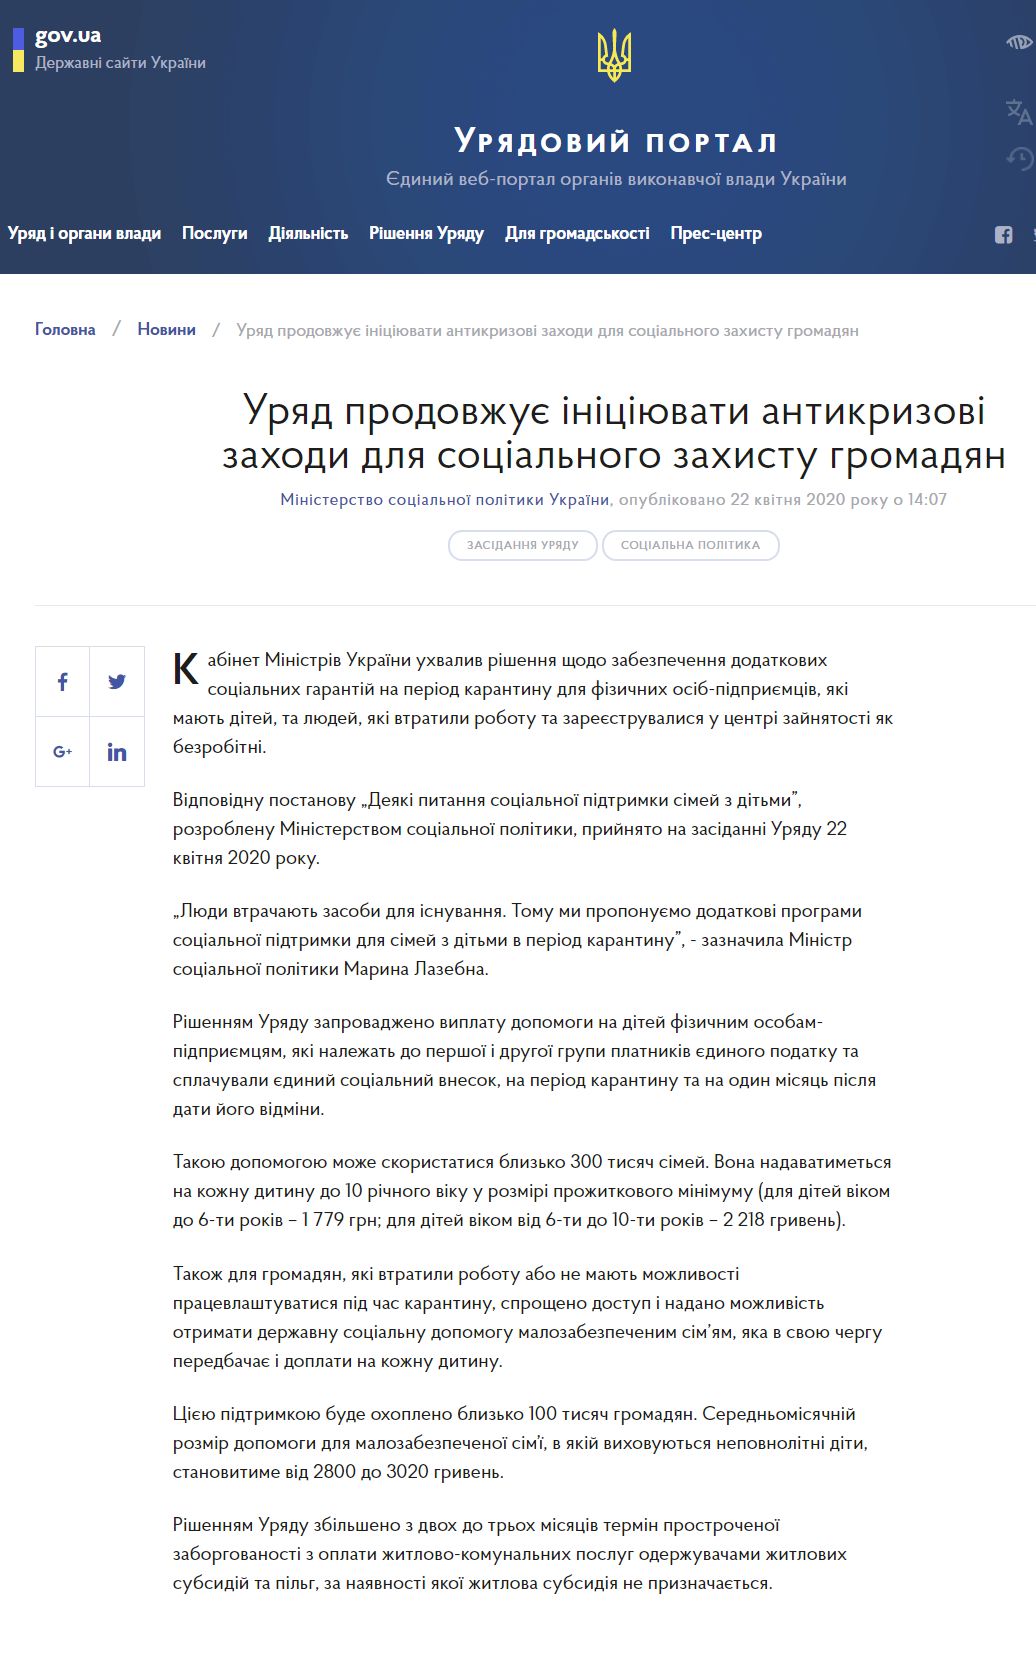 https://www.kmu.gov.ua/news/uryad-zaprovadiv-dodatkovi-socialni-garantiyi-dlya-fopiv-ta-malozabezpechenih-simej-na-period-karantinu